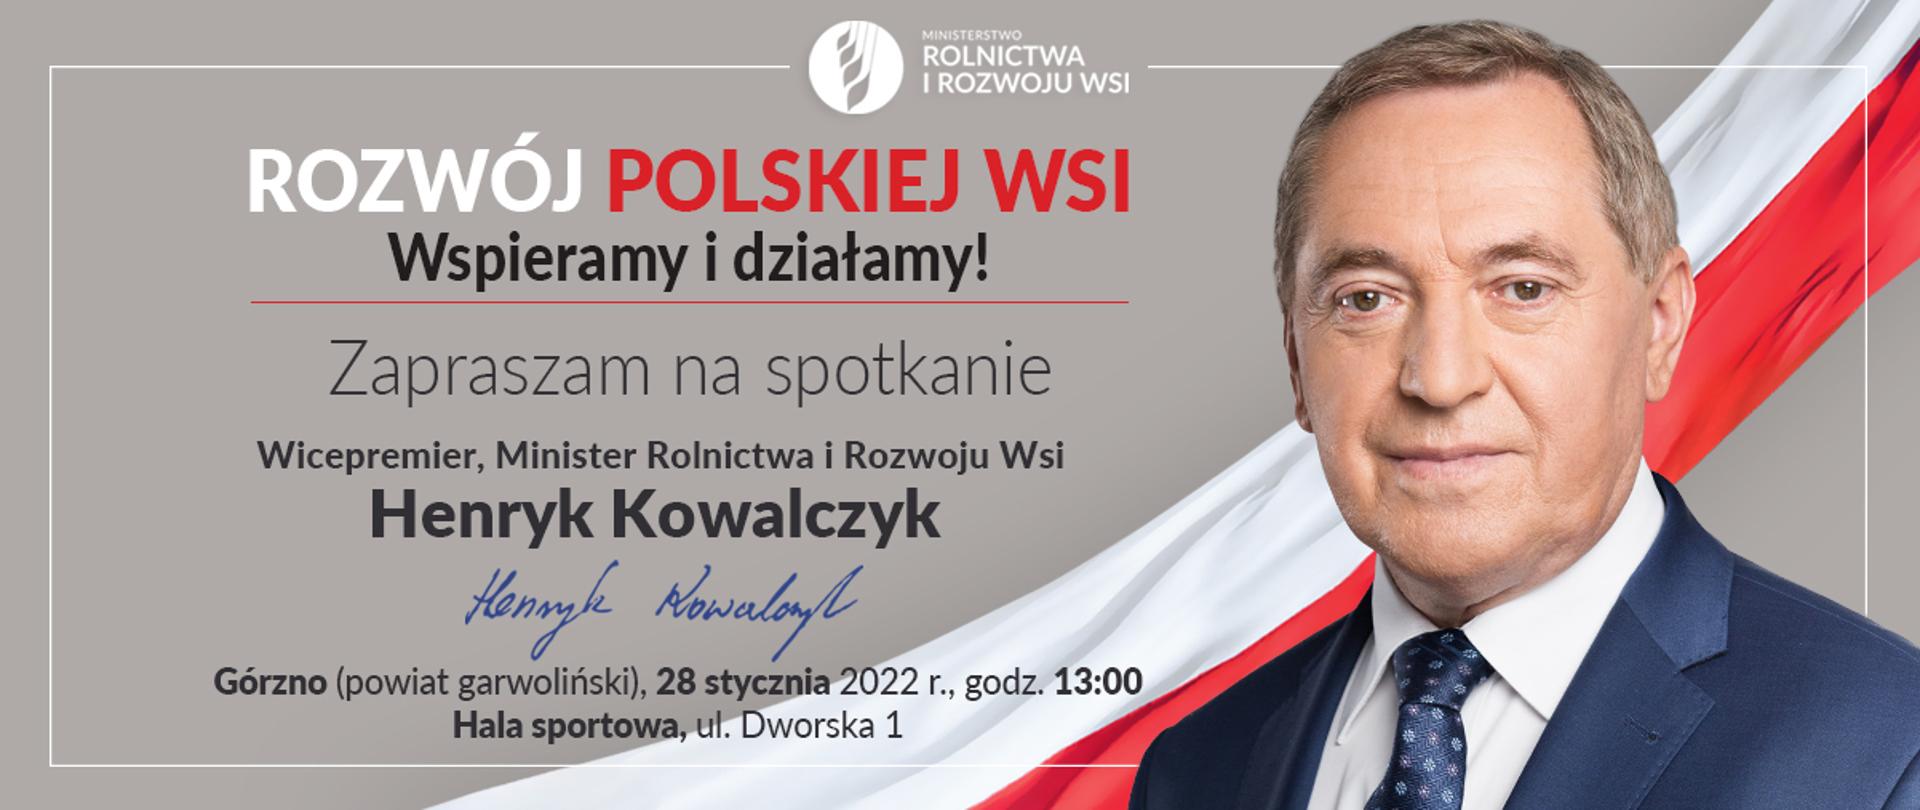 Zaproszenie na spotkanie z Wicepremierem, Ministrem Rolnictwa i Rozwoju Wsi - Henrykiem Kowalczykiem